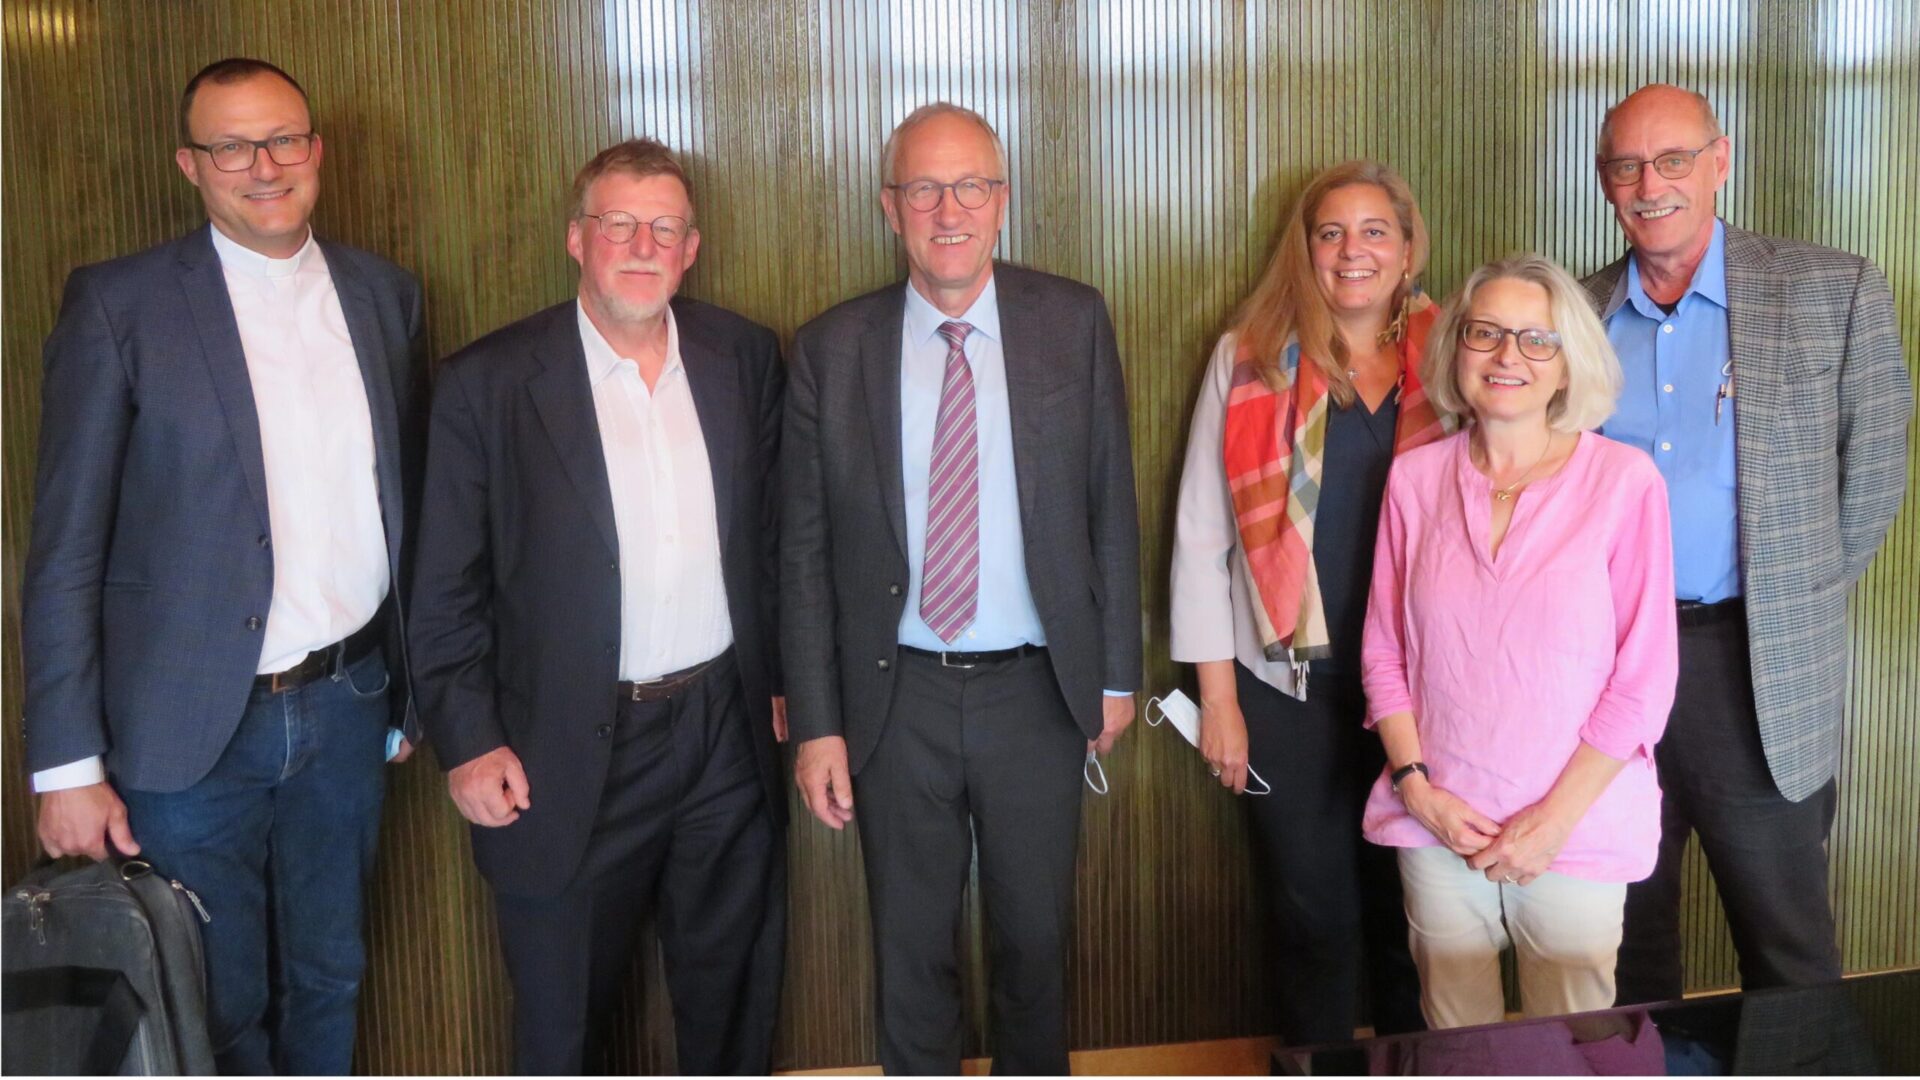 De gauche à droite: Andreas Rellstab (Vicepresident), Jacques Berset, Peter Hegglin (President), Beryl Niedermann, Madeleine Winterhalter, Urs Staub. (Foto: MI)